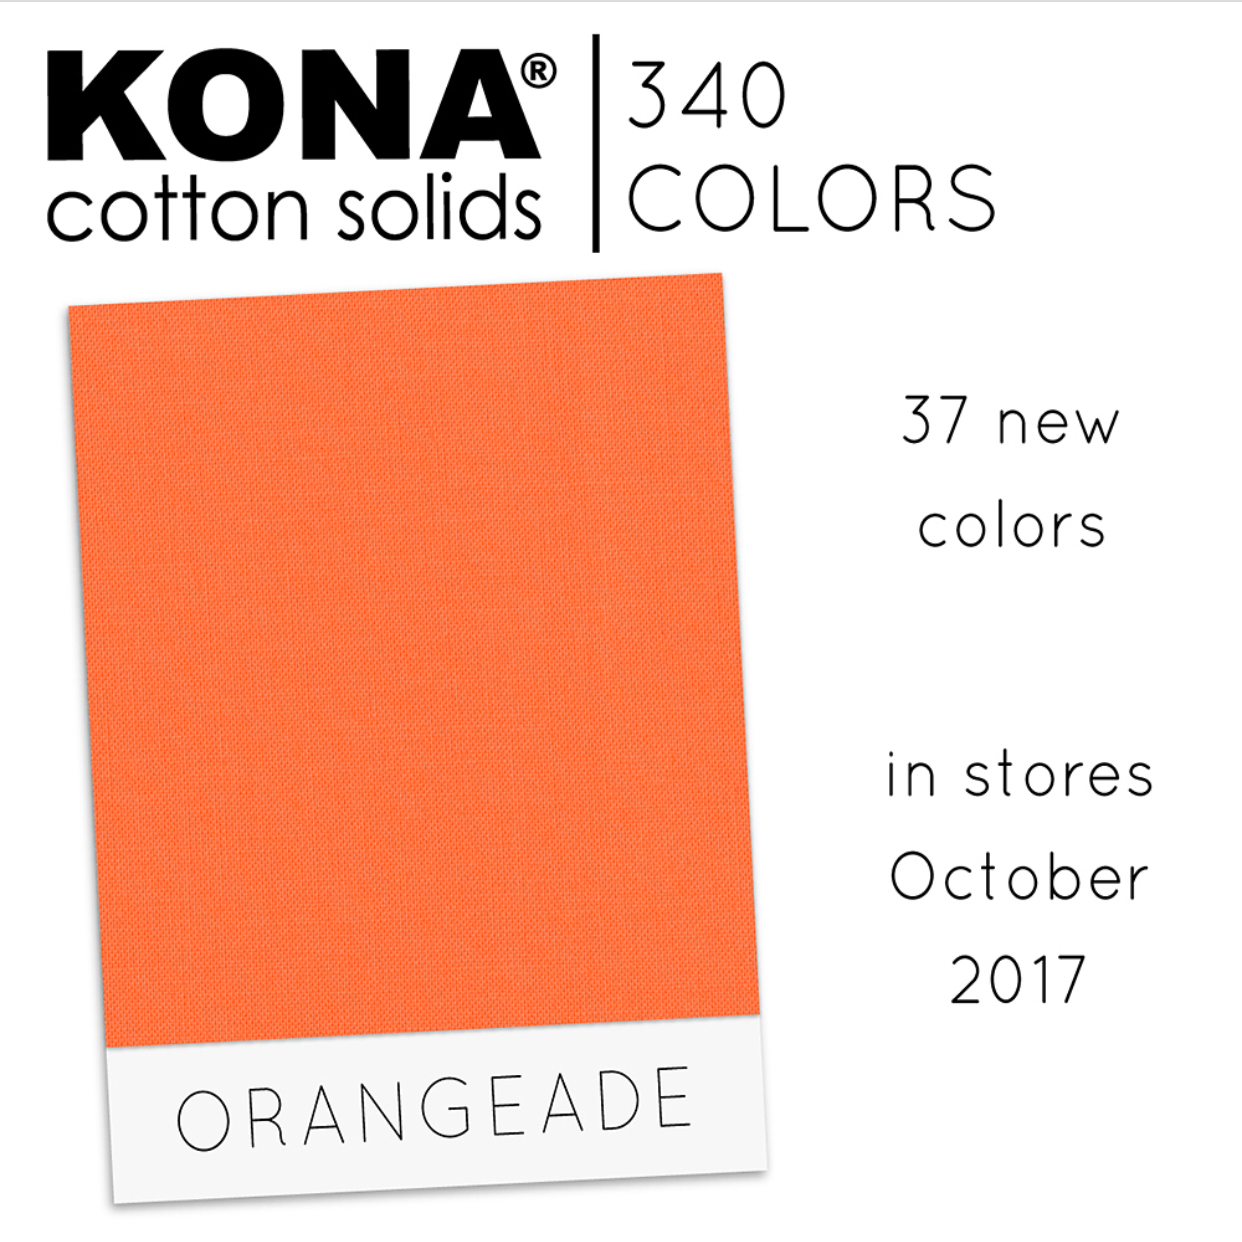 Kona Orangeade